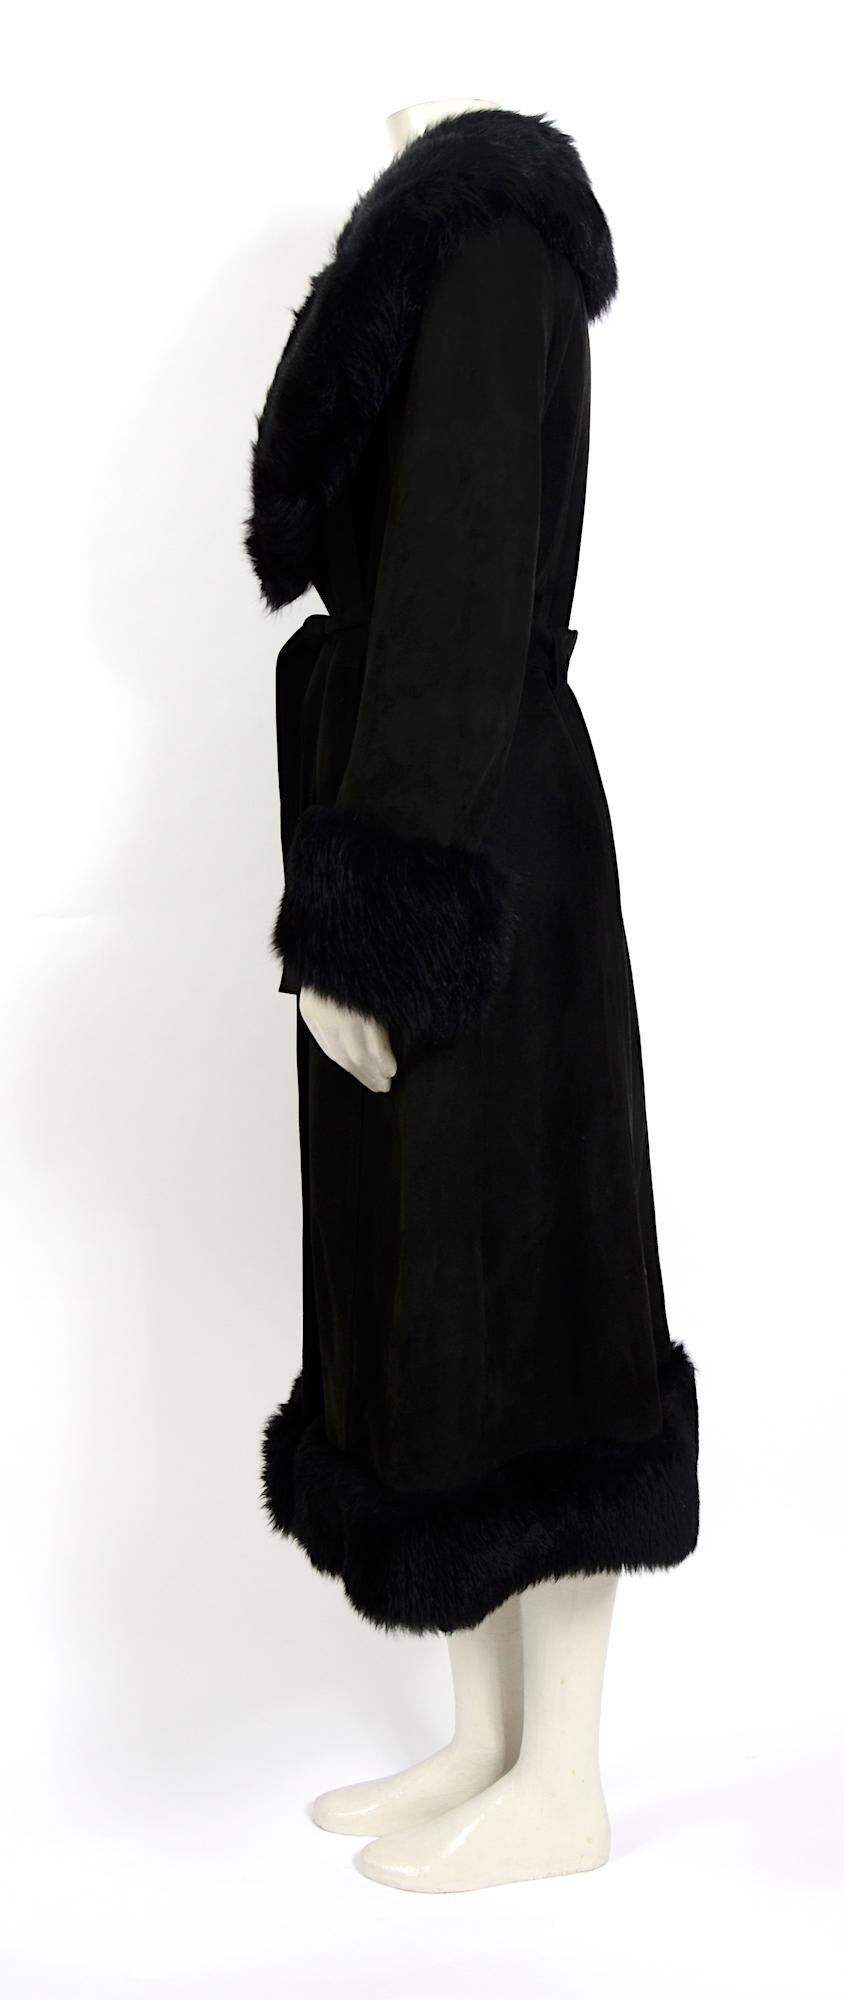 Black Lanvin vintage 1960s black suede belted coat with removable fur collar